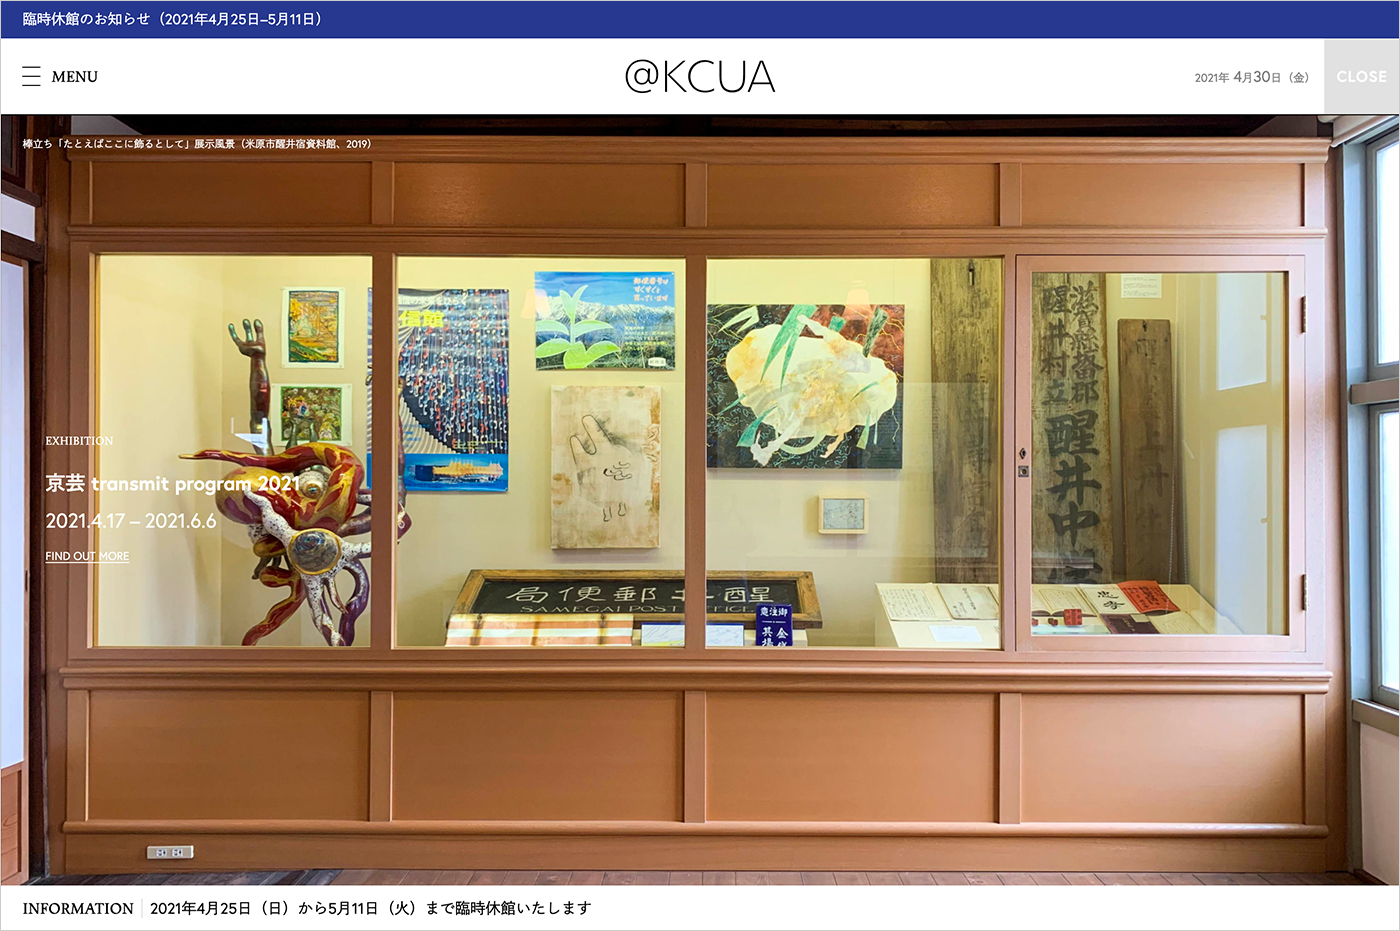 京都市立芸術大学ギャラリー@KCUA | Kyoto City University of Arts Art Gallery @KCUAウェブサイトの画面キャプチャ画像